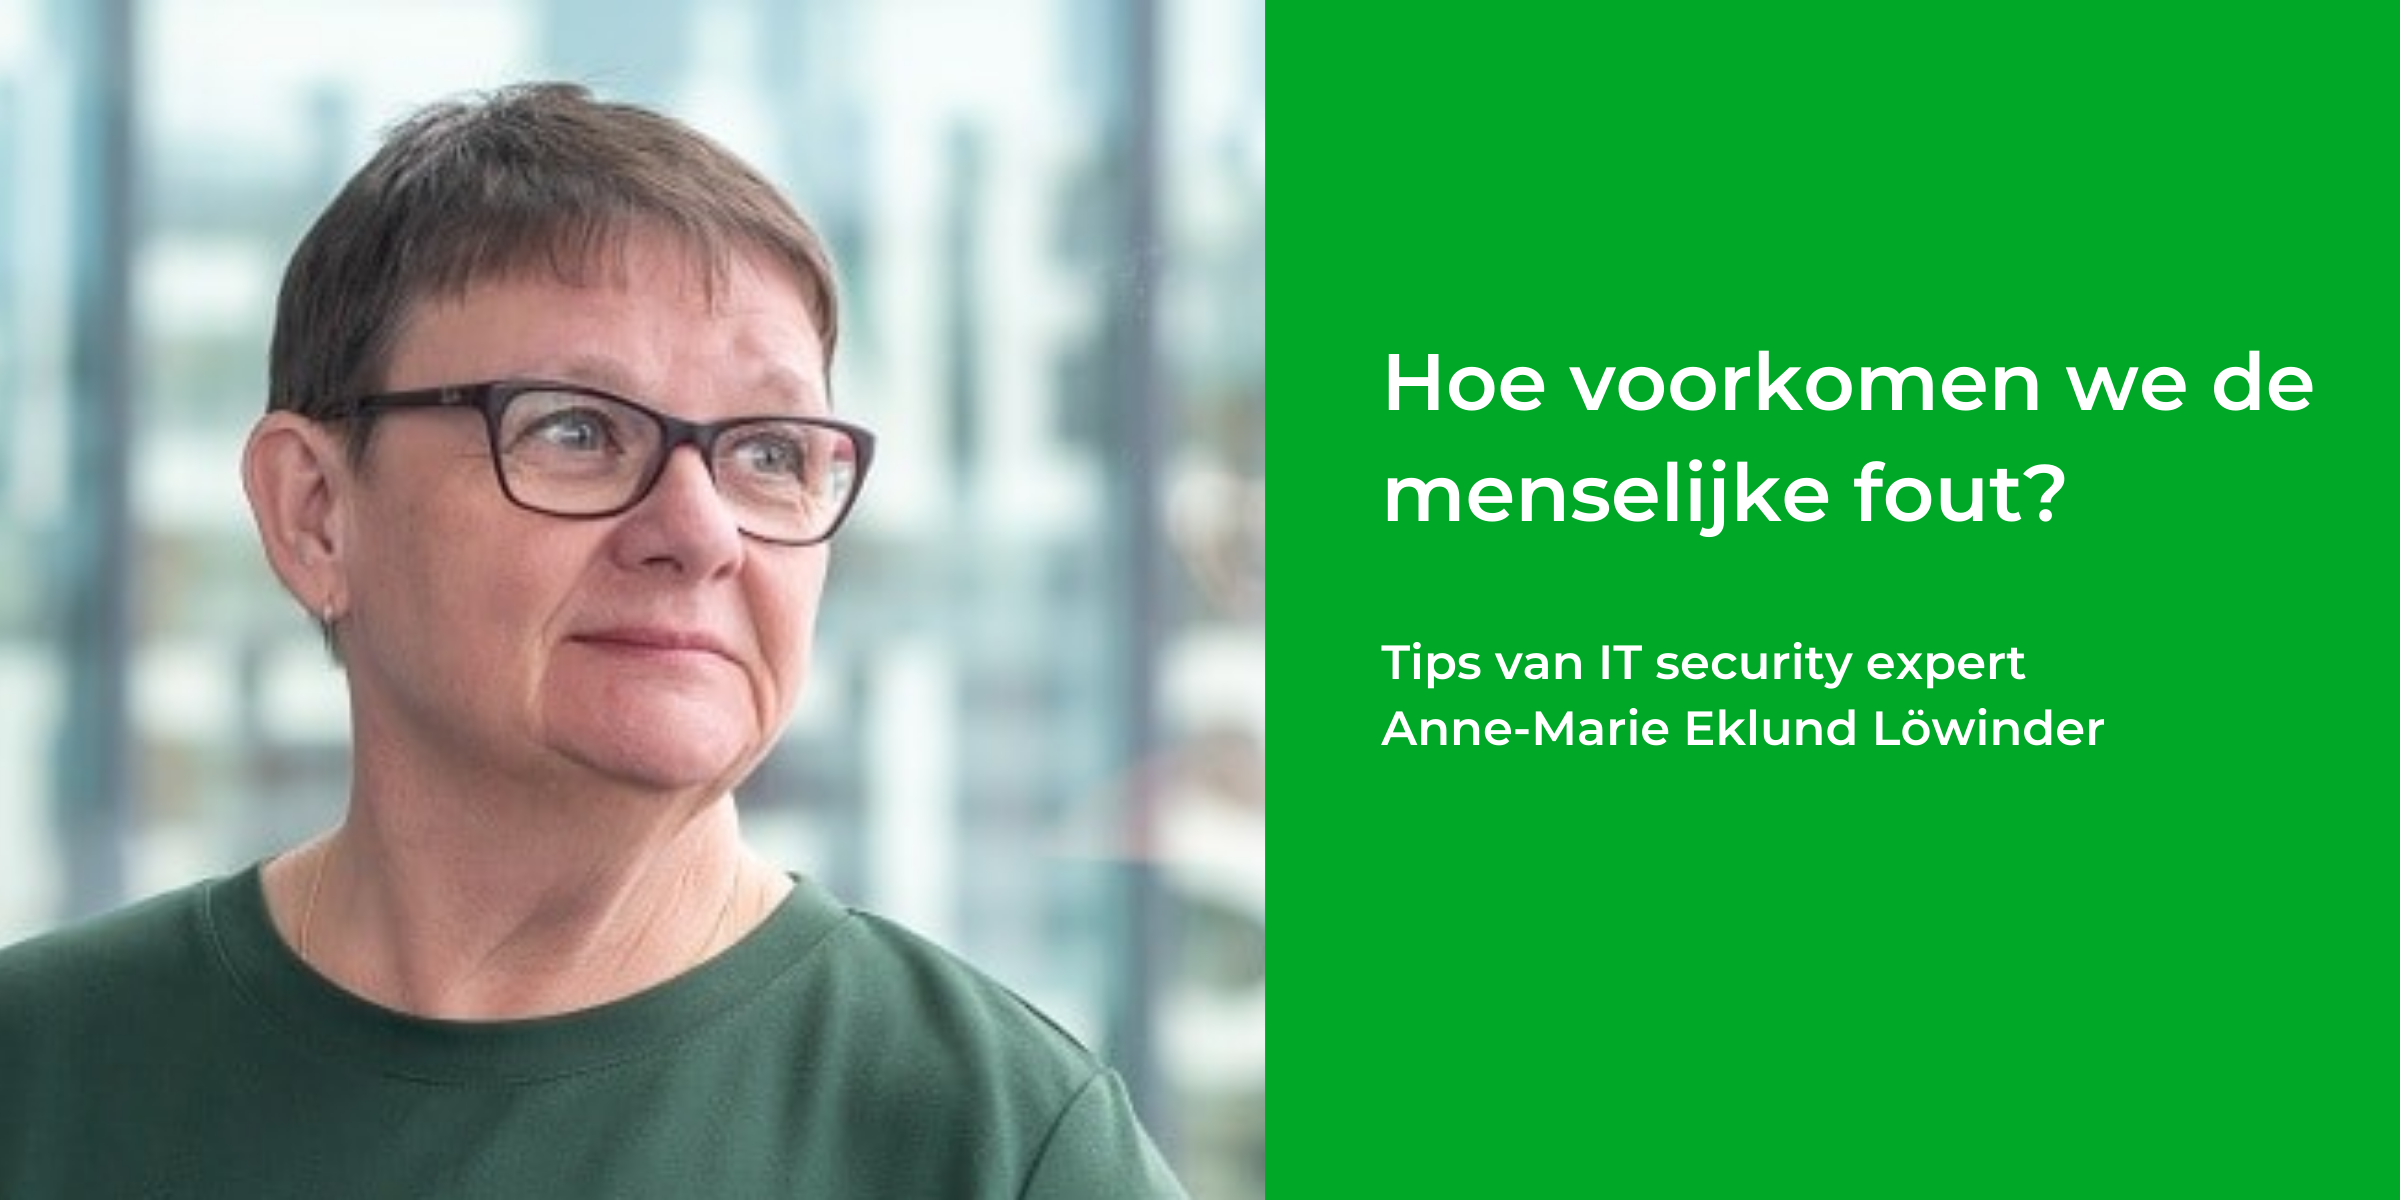 Anne-Marie Eklund Löwinder: Hoe voorkomen we de menselijke fout?